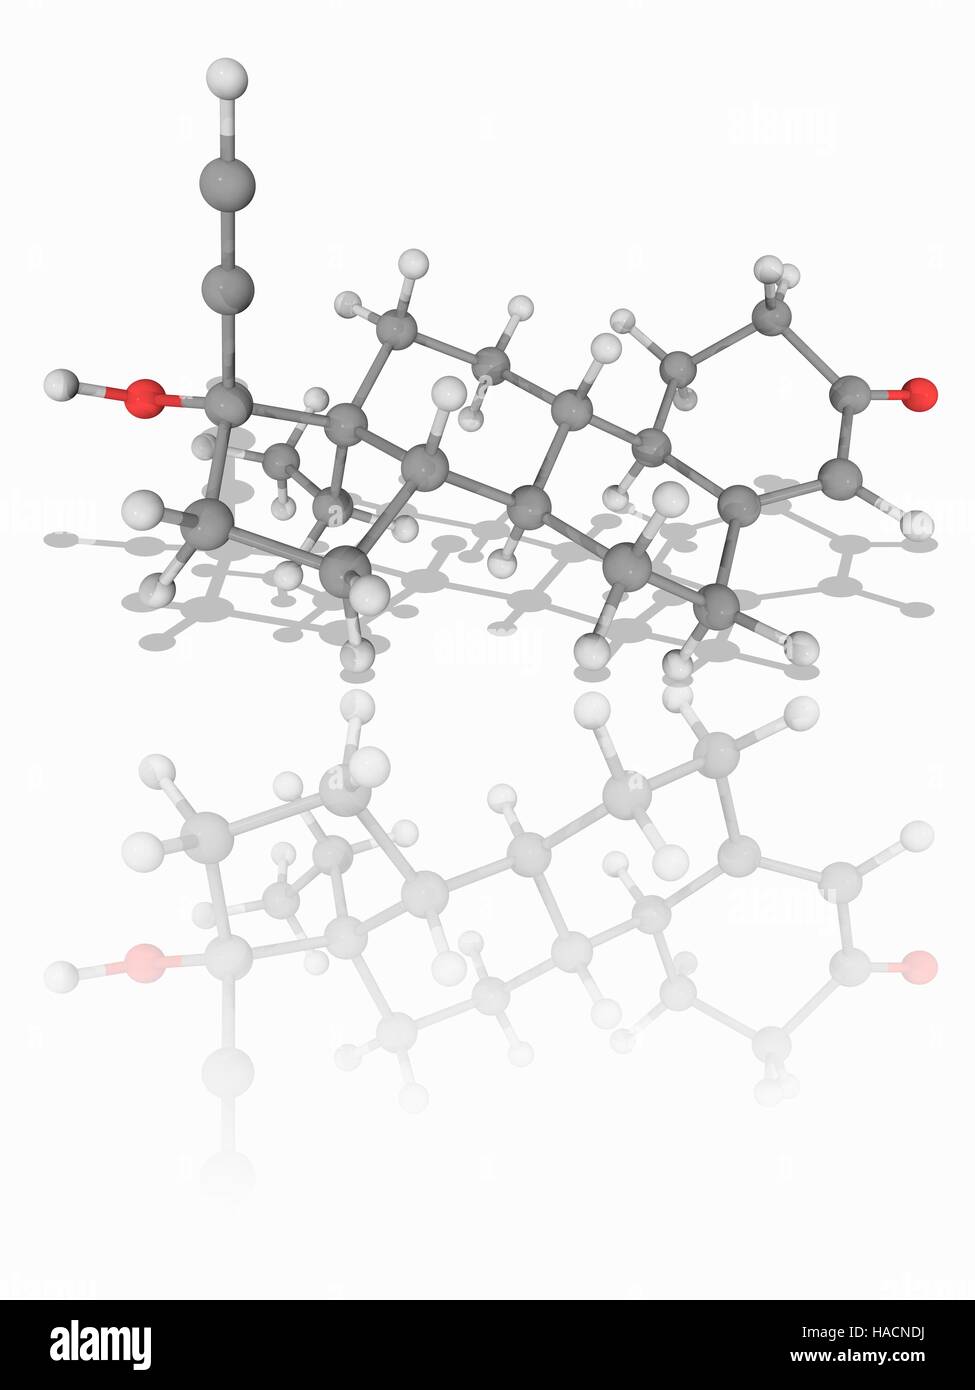 Levonorgestrel. Molekulares Modell des synthetischen Hormon Levonorgestrel (C21. H28. O2). Diese zweite Generation synthetische Gestagen wird bei hormonellen Verhütungsmitteln wie der "Morgen danach Pille" verwendet. Atome als Kugeln dargestellt werden und sind farblich gekennzeichnet: Kohlenstoff (grau), Wasserstoff (weiß) und Sauerstoff (rot). Abbildung. Stockfoto